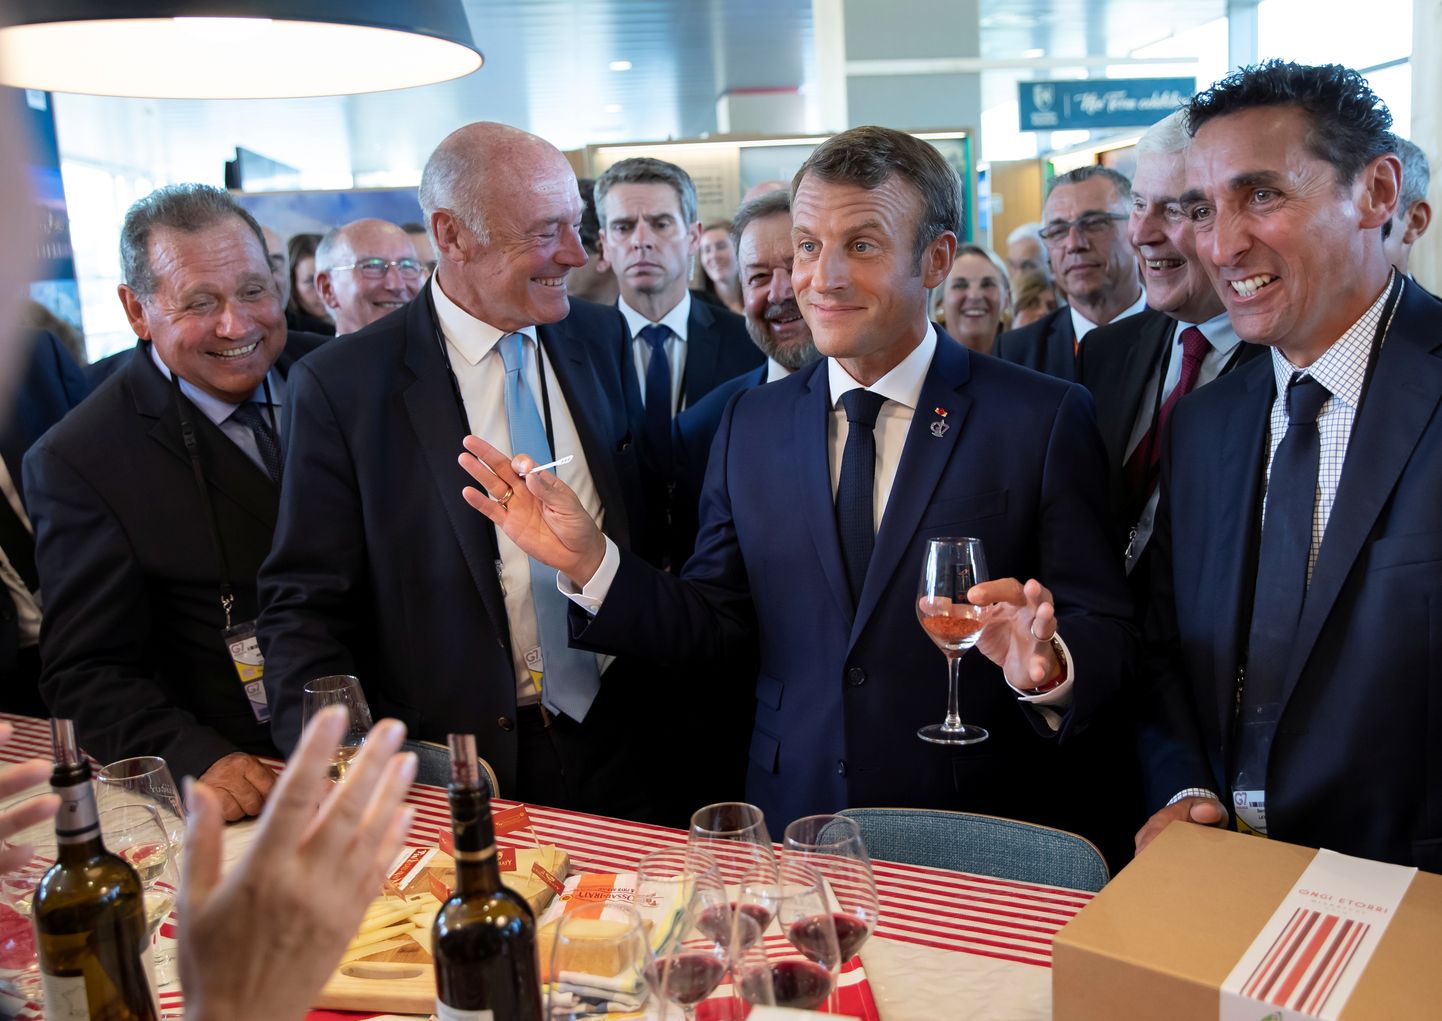 Prantsuse president Emmanuel Macron (keskel) maitsmas Prantsuse veine G7 tippkohtumise avapäeval rahvusvahelise pressikeskuse kohal olevas näitustesaalis.